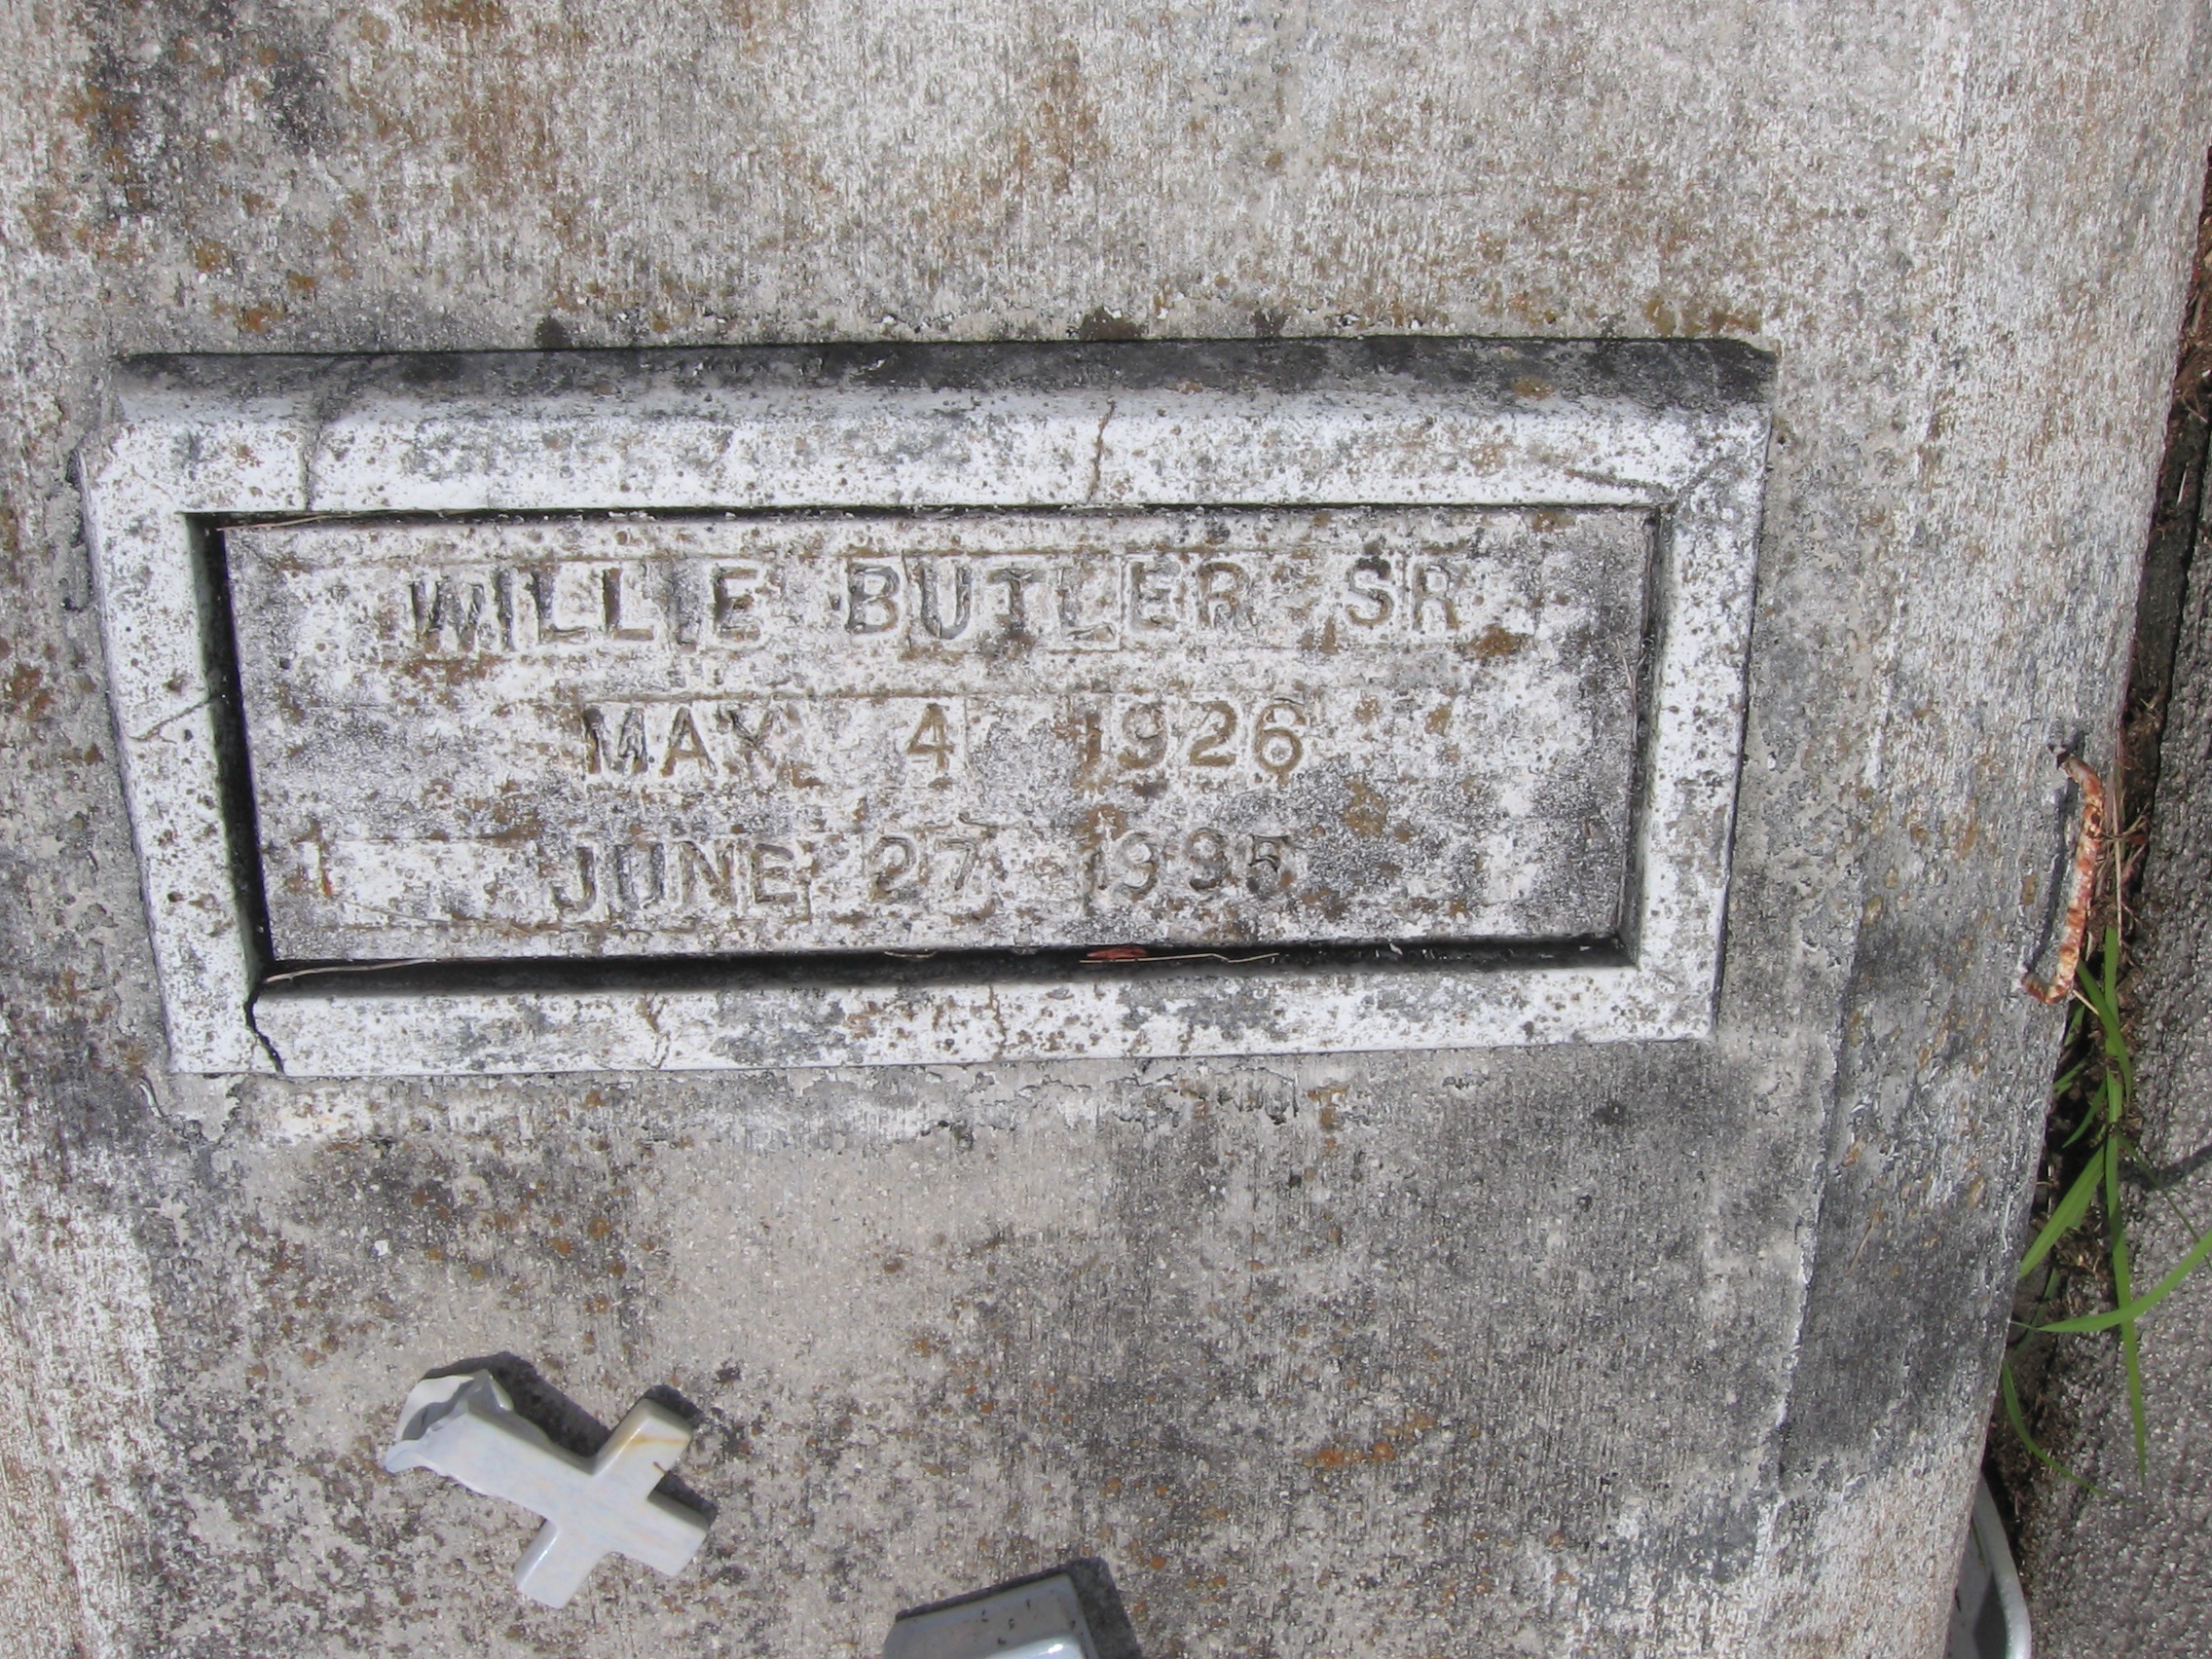 Willie Butler, Sr